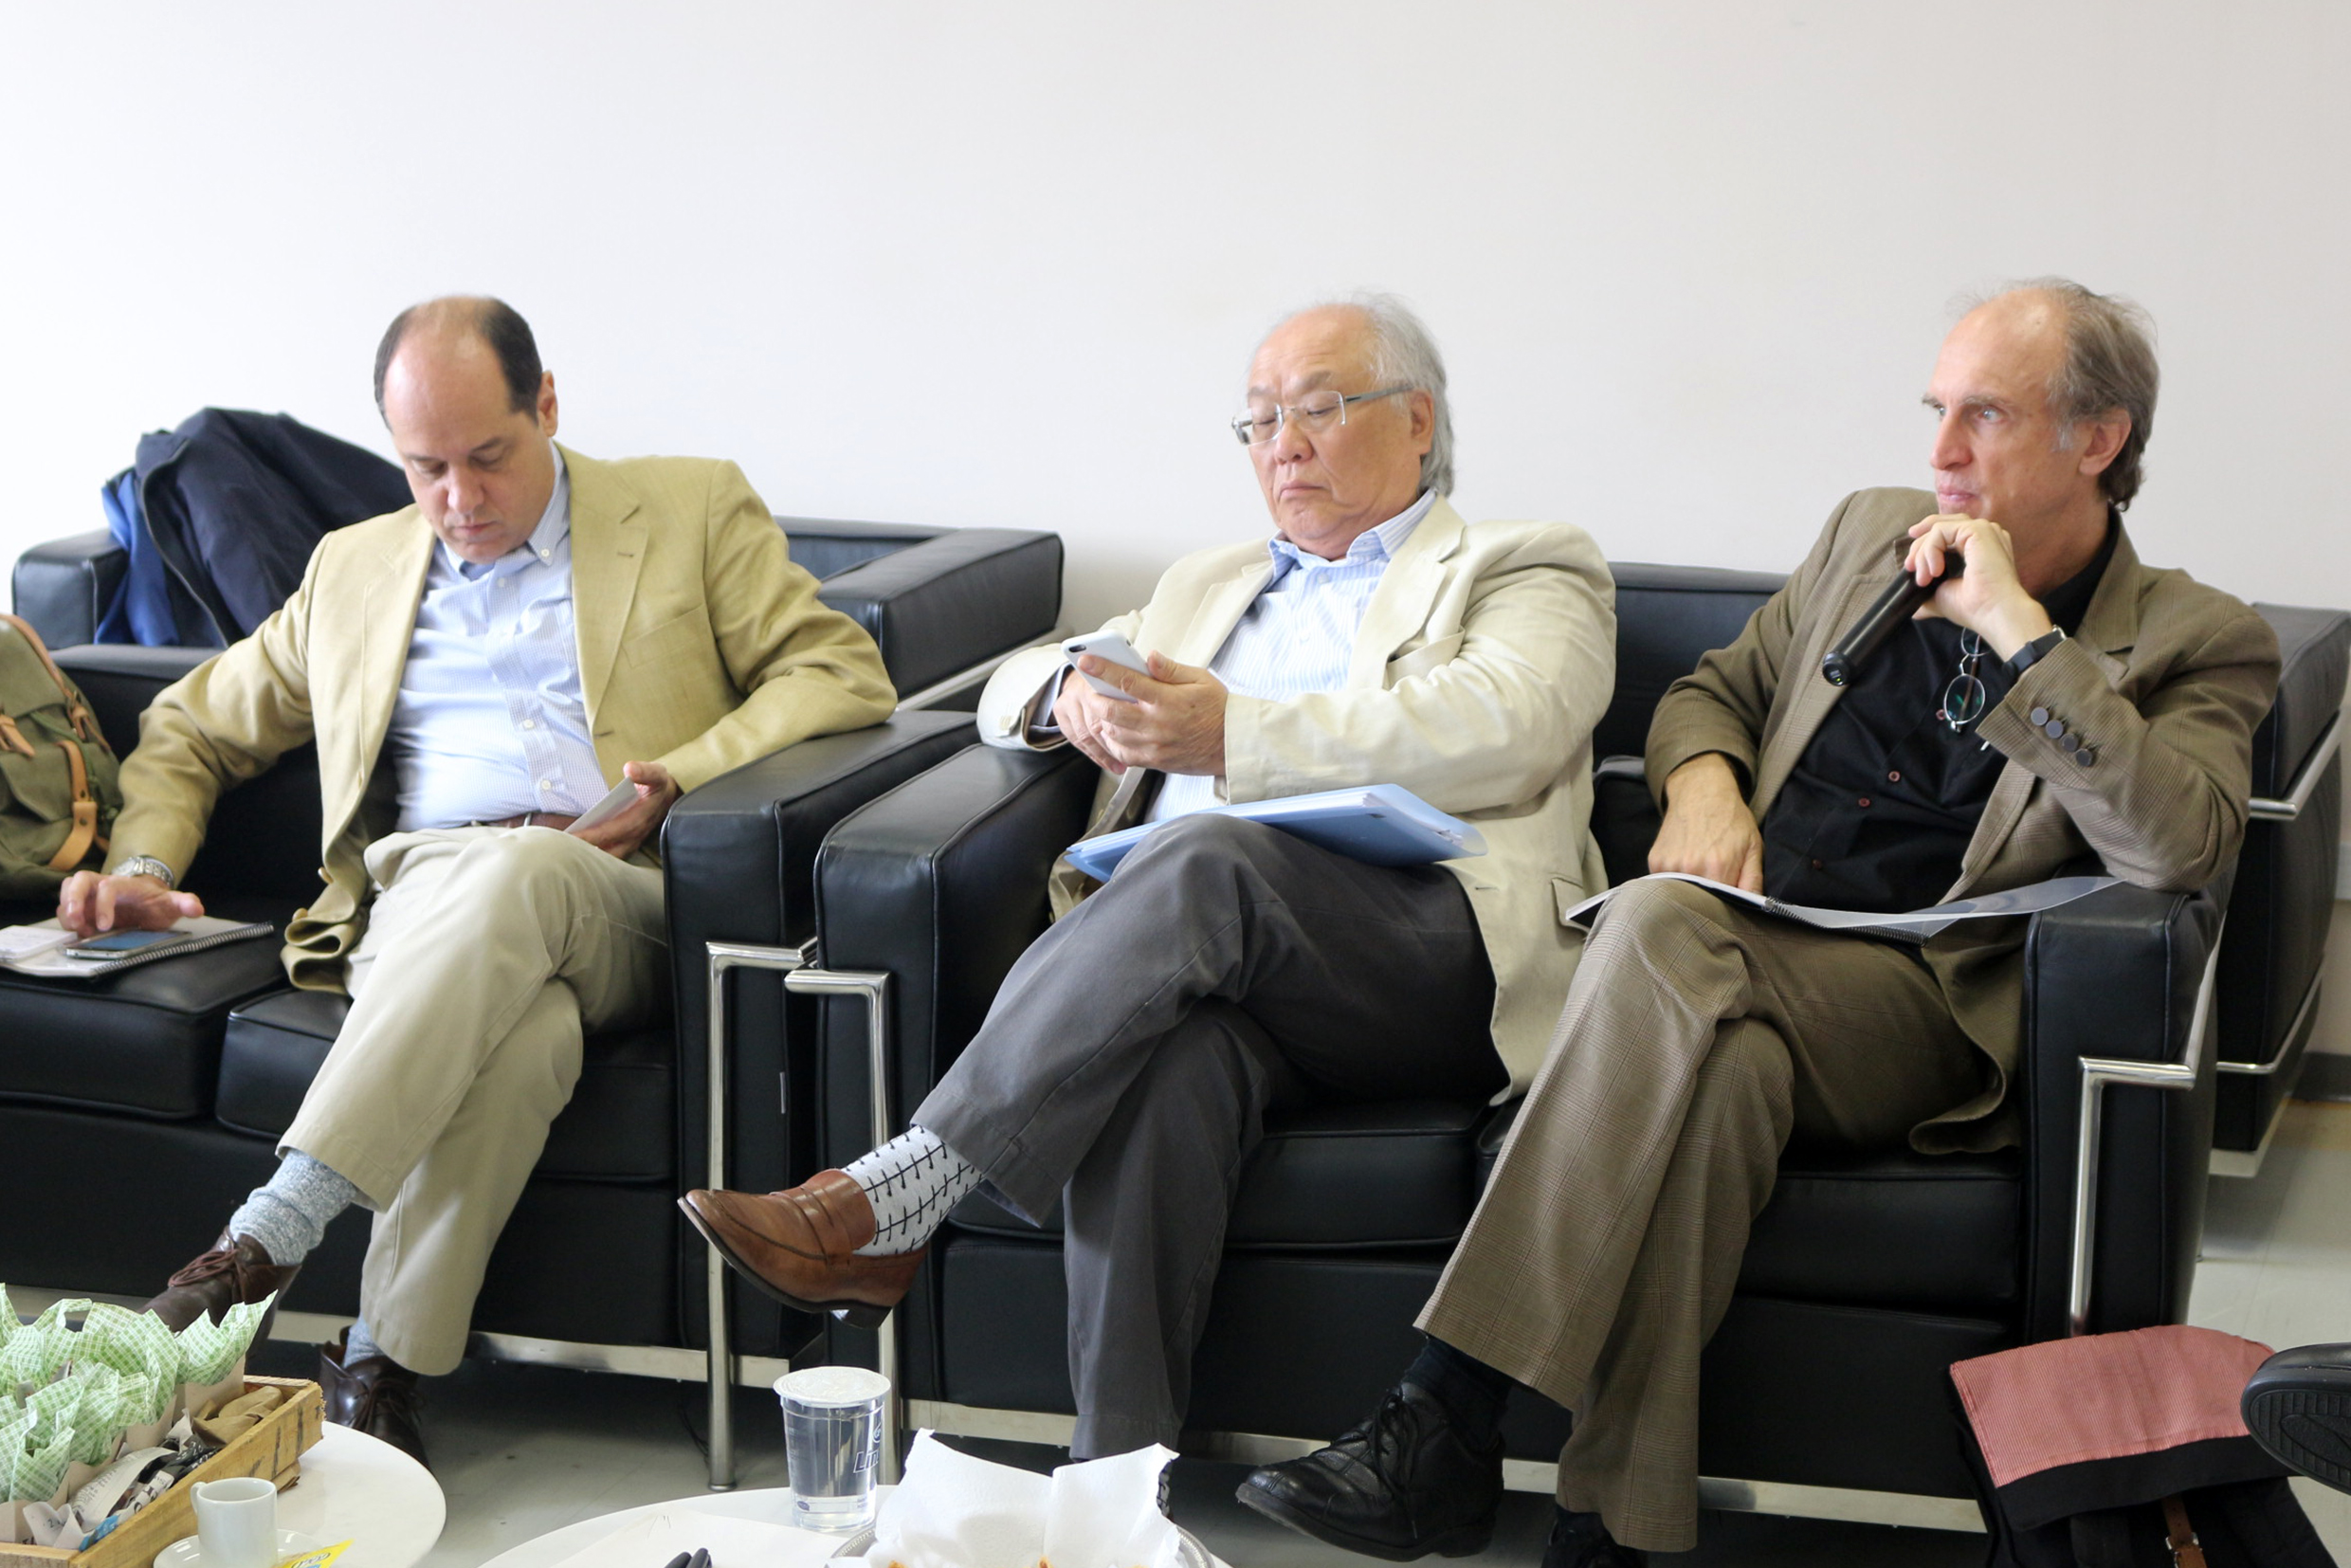 Eugênio Bucci, Ricardo Ohtake e Martin Grossmann